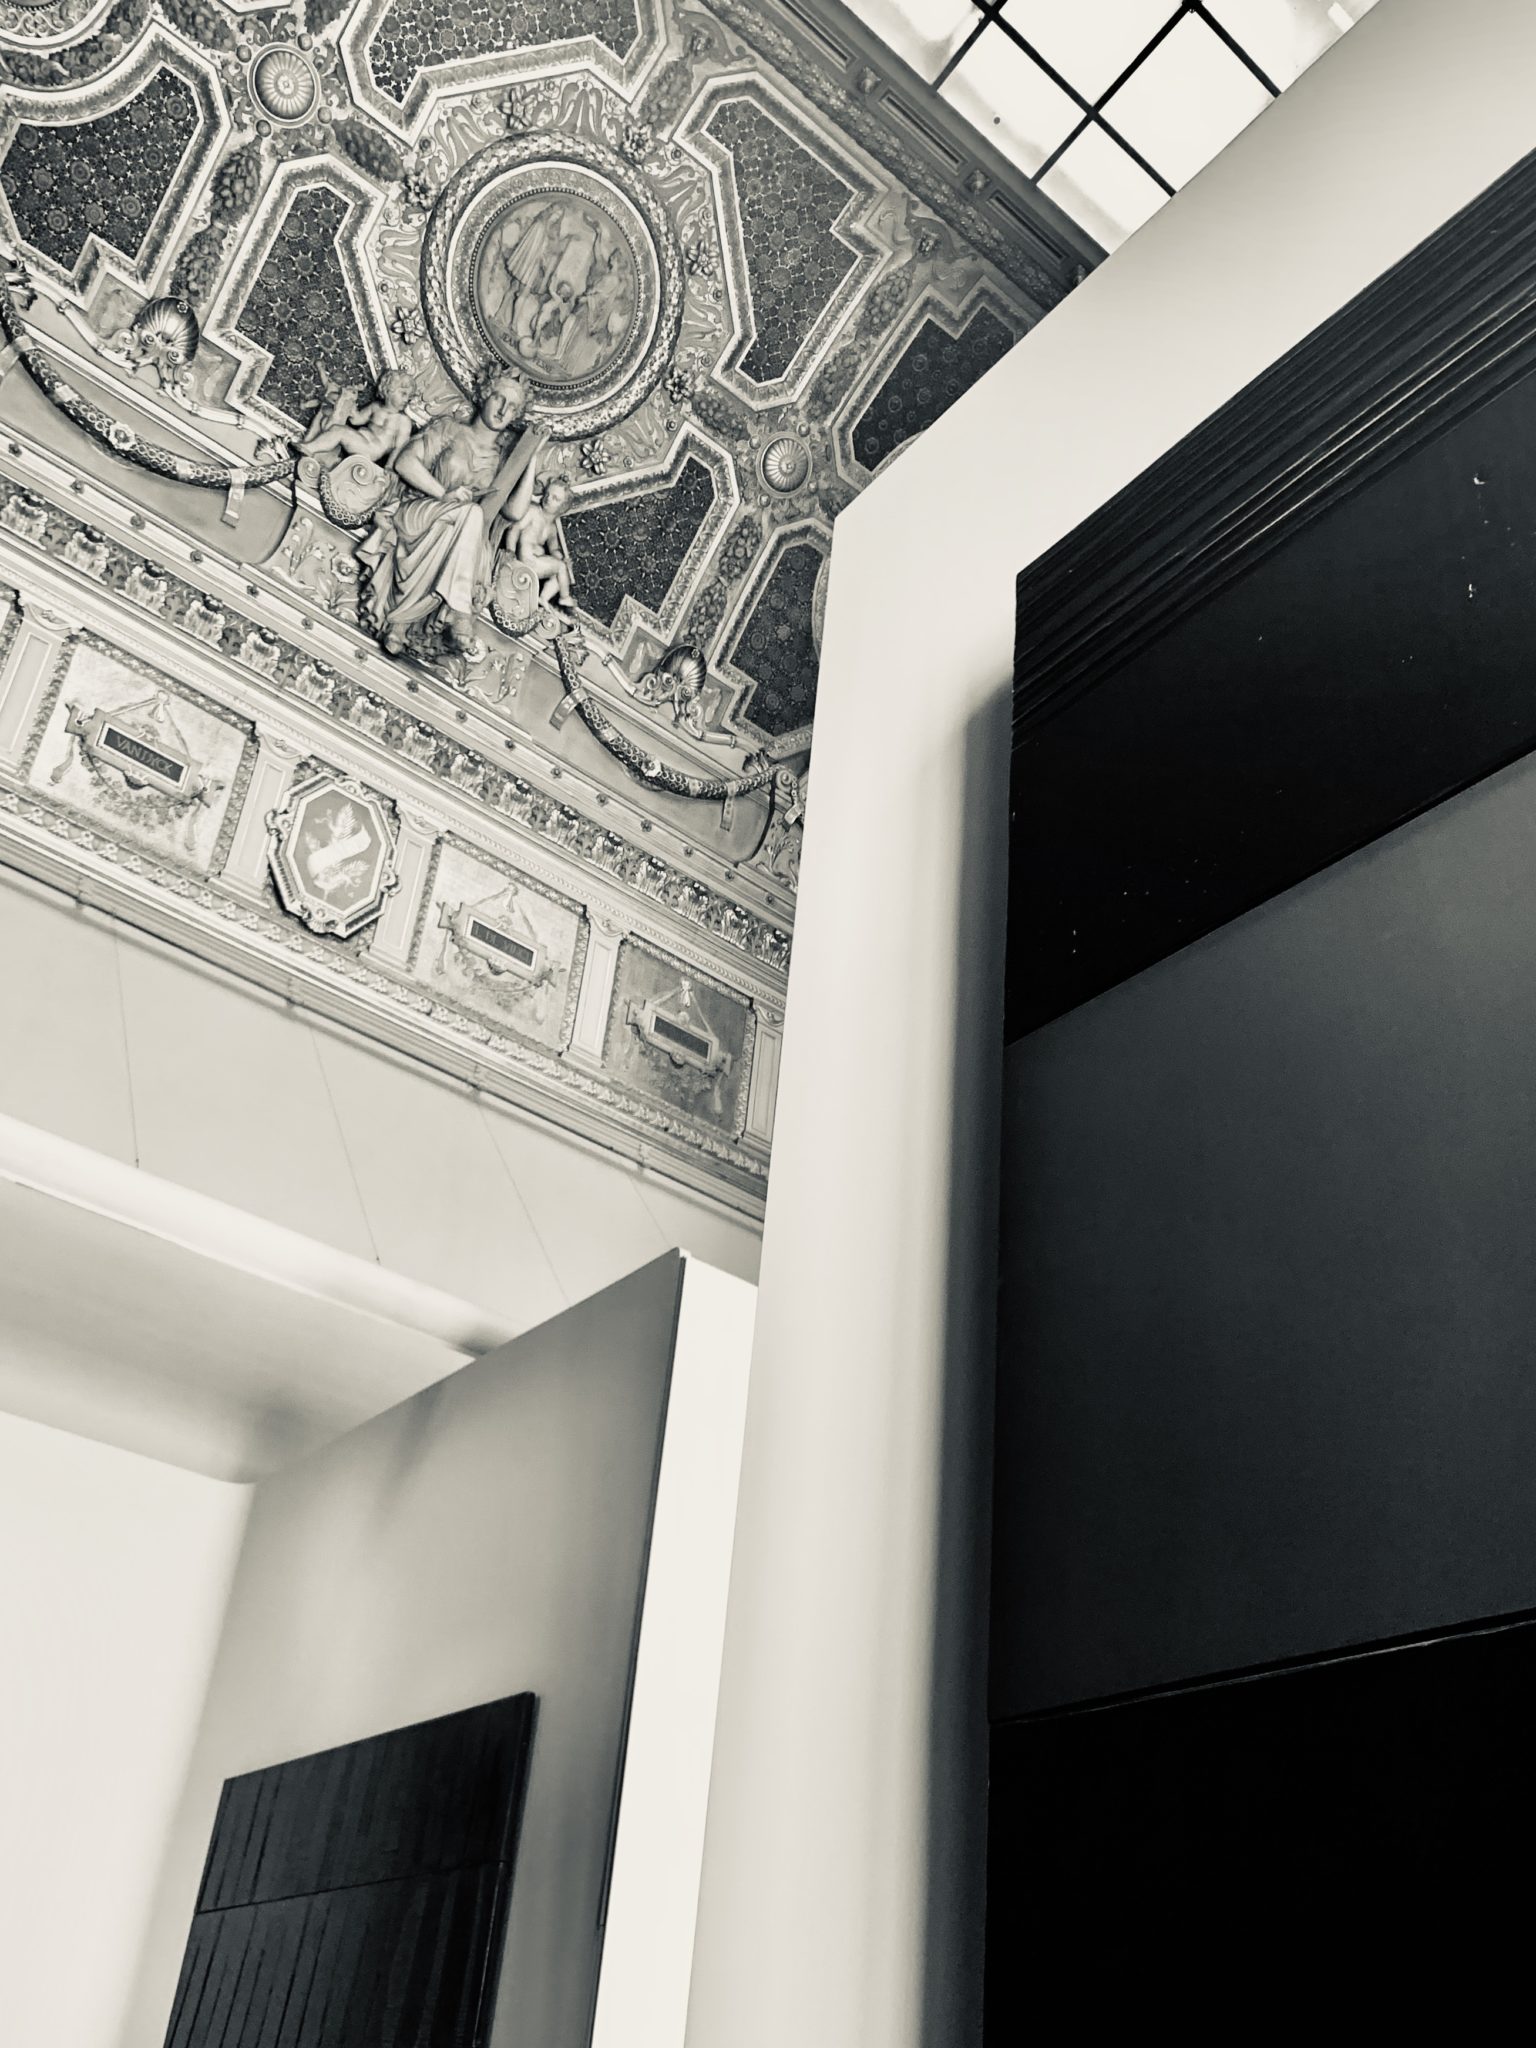 Exposition Soulages au Louvre 2019, Photographie de l’exposition courtesy Artvisions